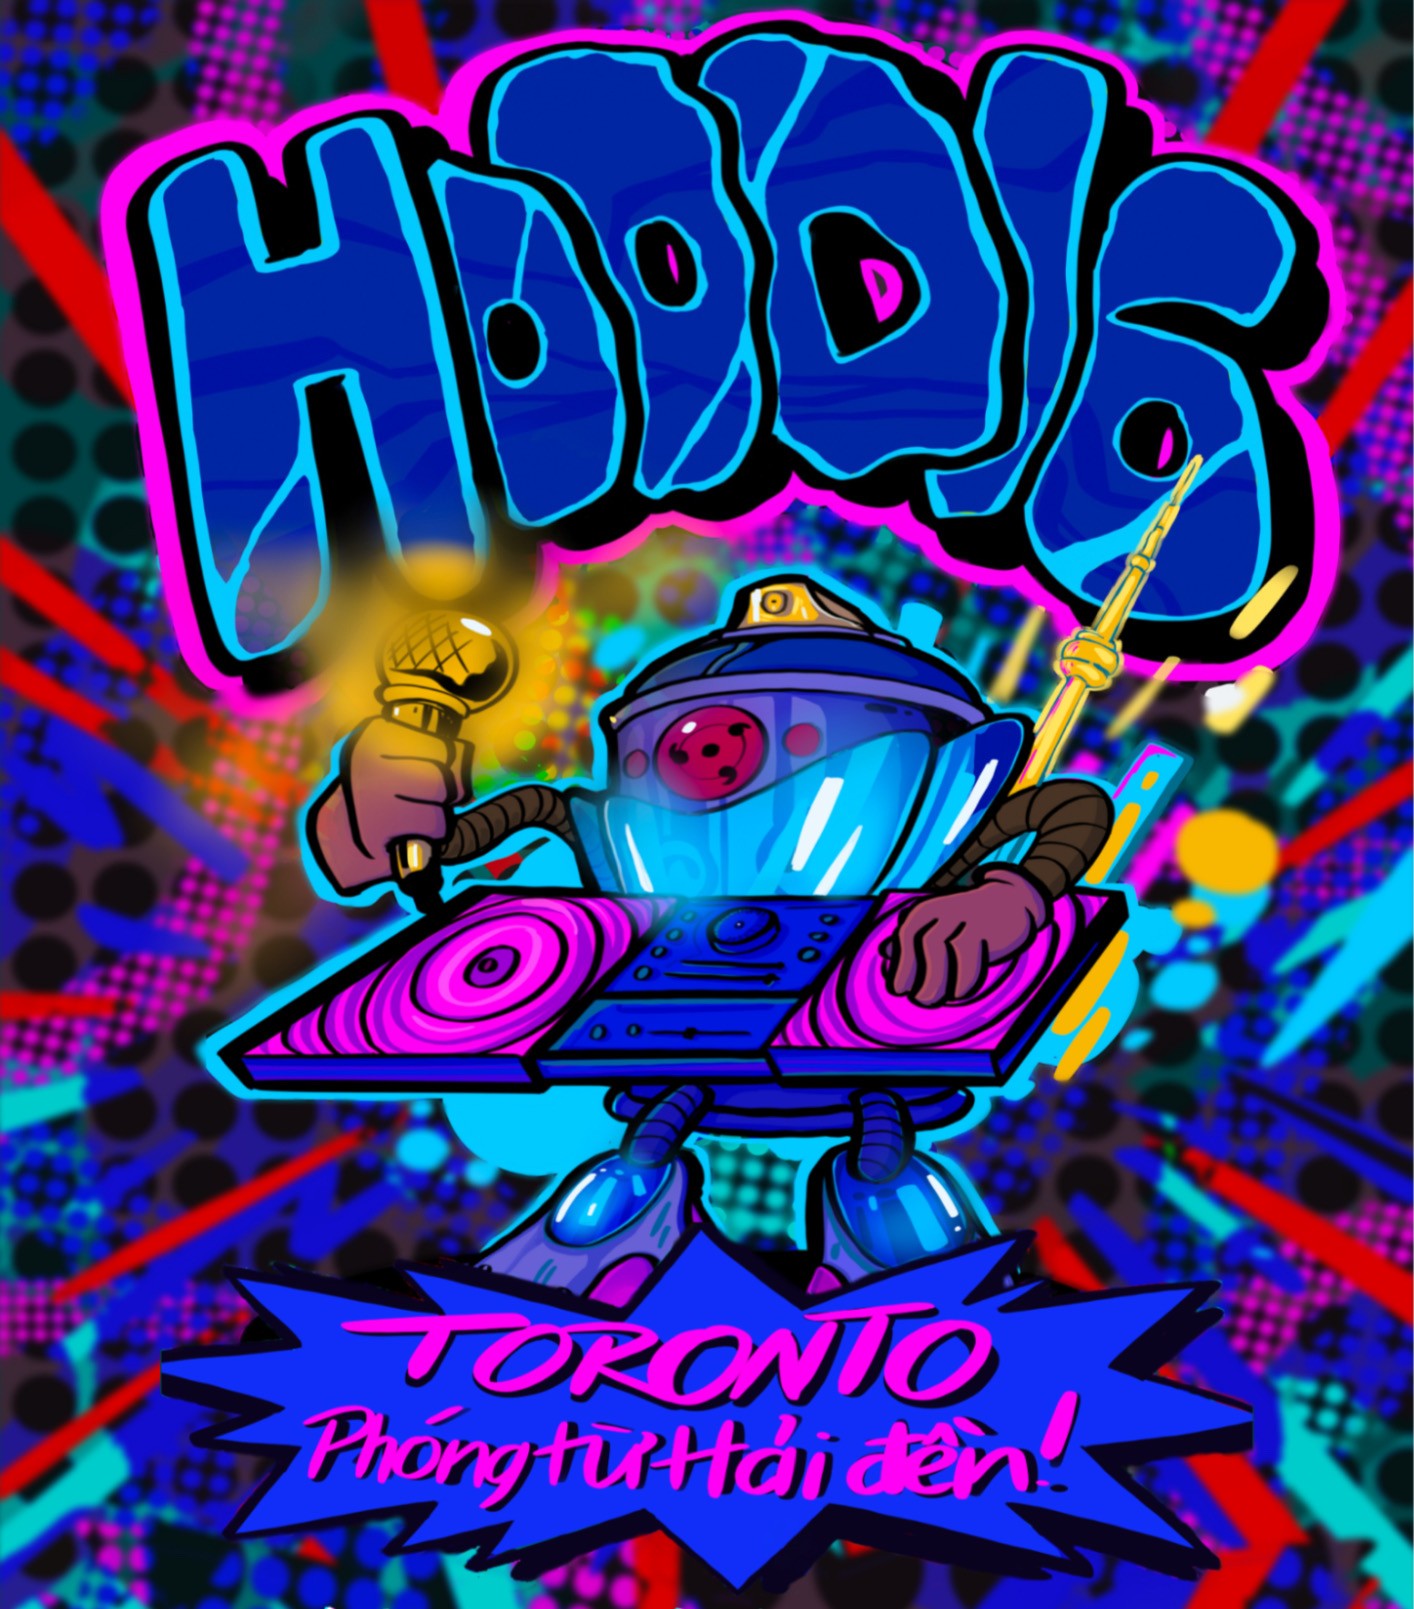 Hood16 Show - Đại hội Hip Hop diễn ra vào đầu năm mới trên đất Hải Phòng